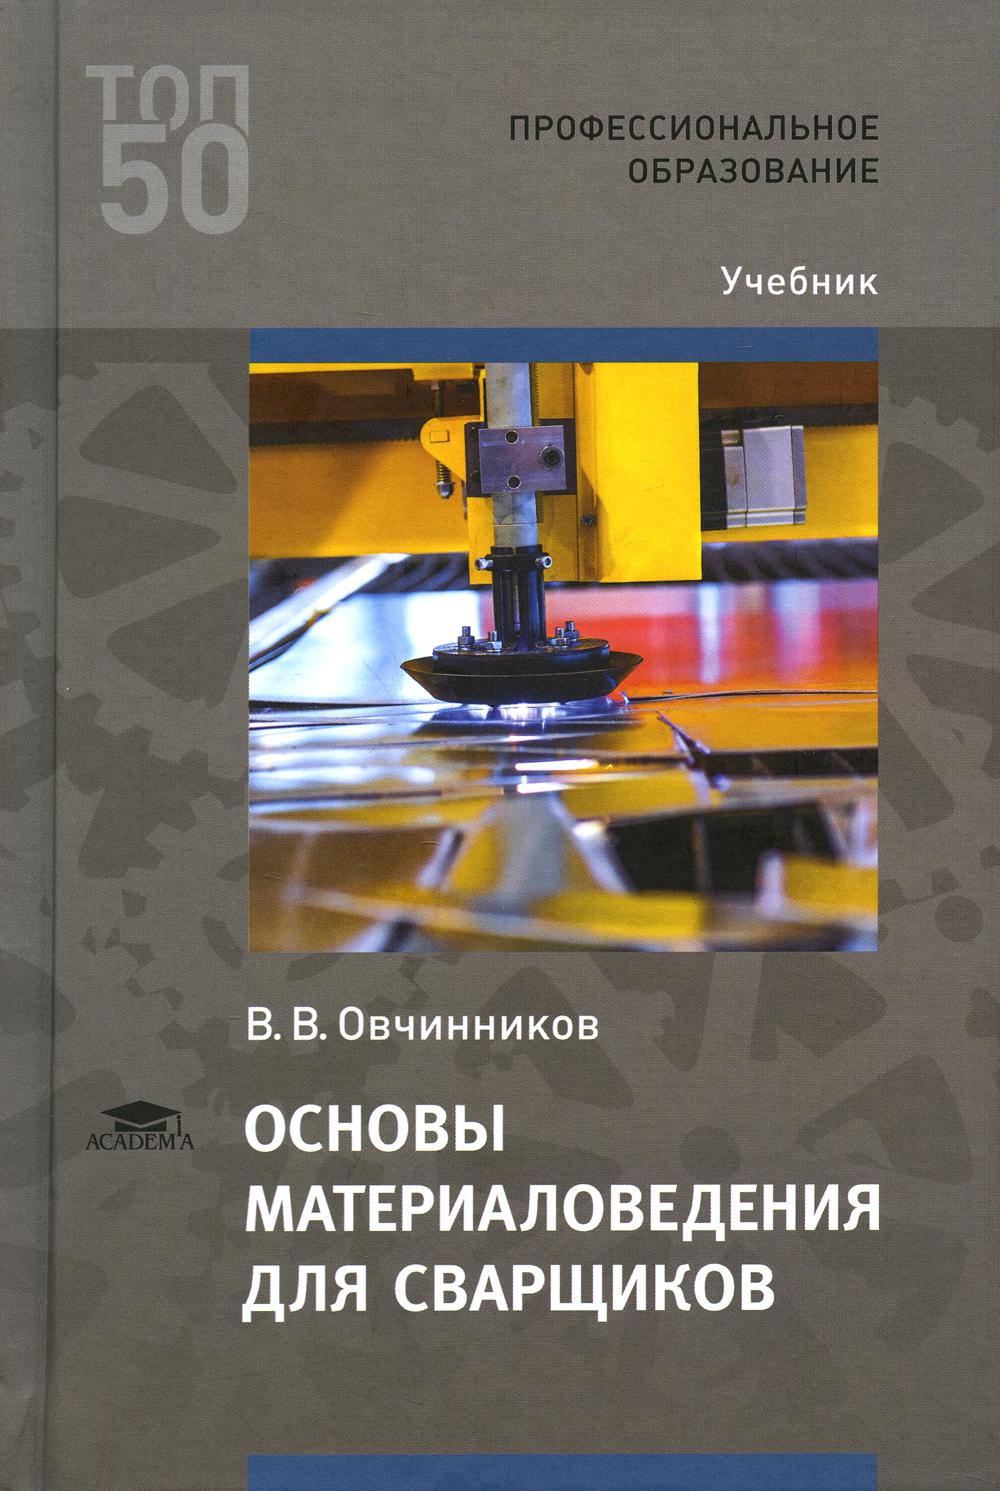 Основы материаловедения для сварщиков: Учебник. 4-е изд., стер